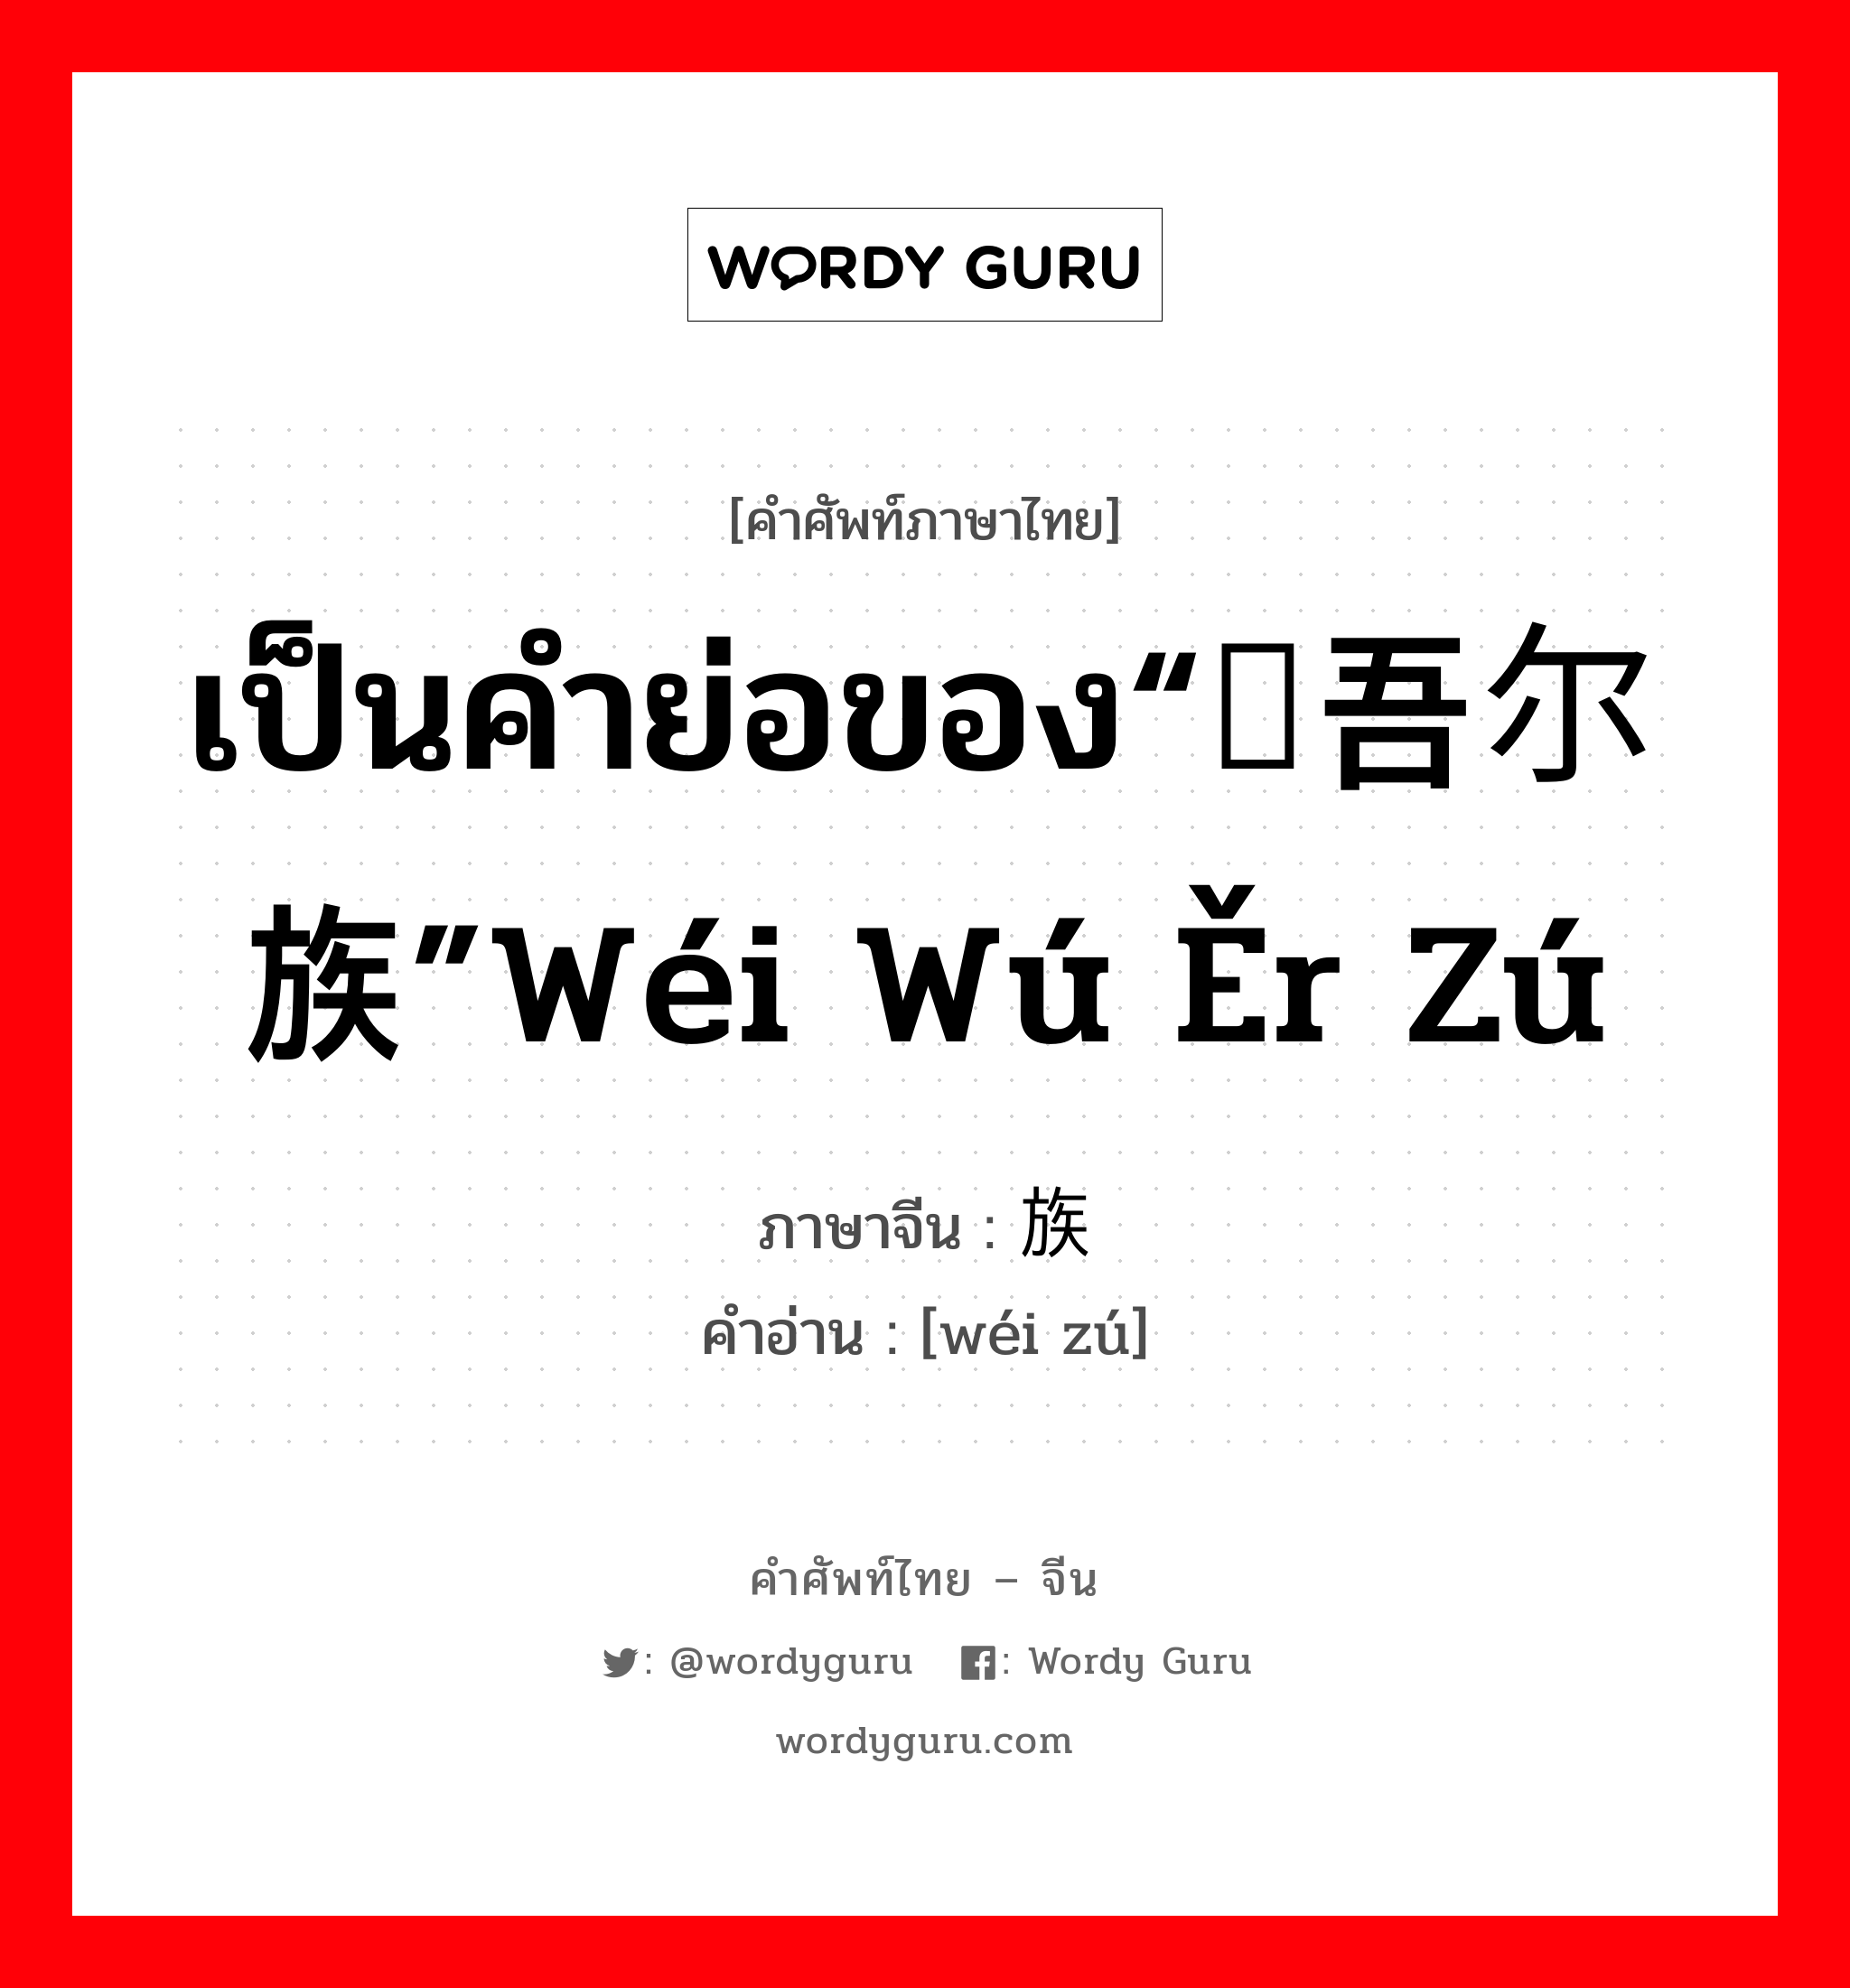 เป็นคำย่อของ“维吾尔族”wéi wú ěr zú ภาษาจีนคืออะไร, คำศัพท์ภาษาไทย - จีน เป็นคำย่อของ“维吾尔族”wéi wú ěr zú ภาษาจีน 维族 คำอ่าน [wéi zú]